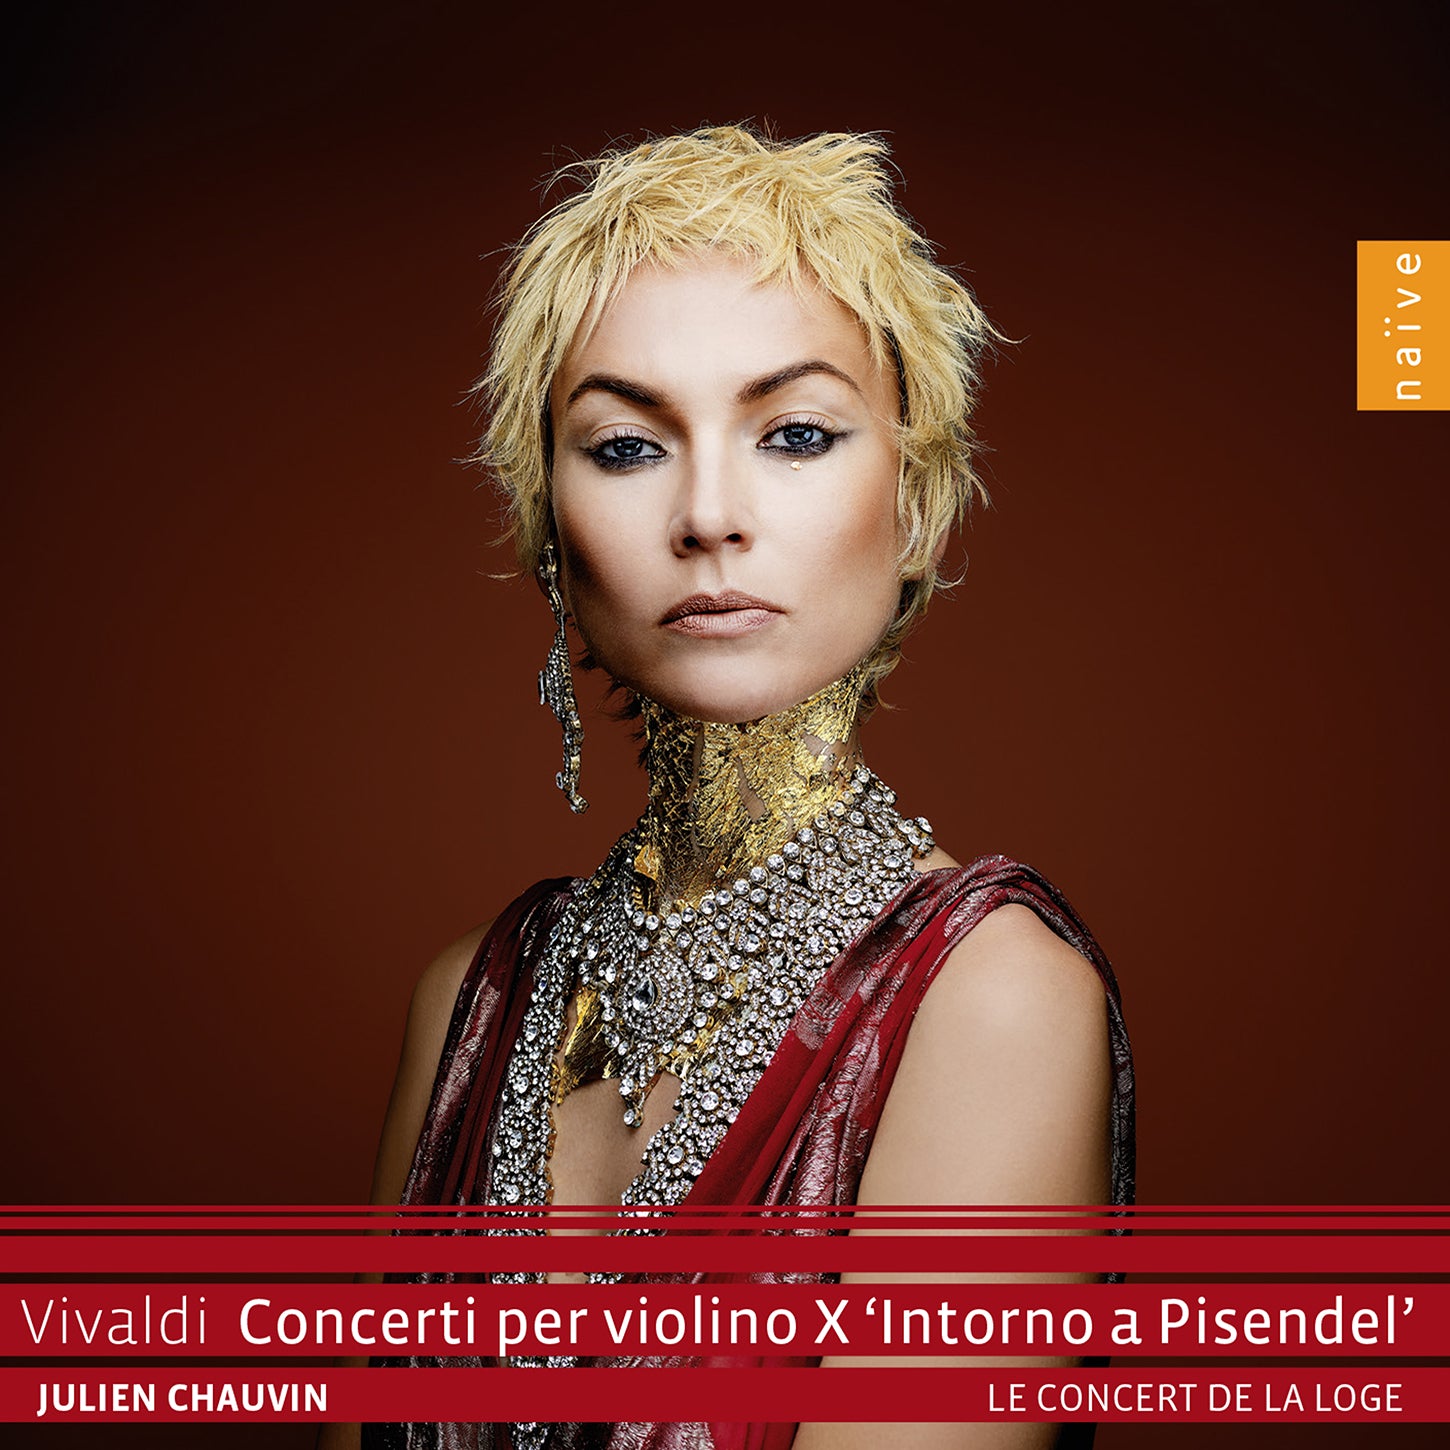 Vivaldi: Violin Concertos vol. 10, 'Intorno a Pisendel' / Chauvin, La Concert de la Loge